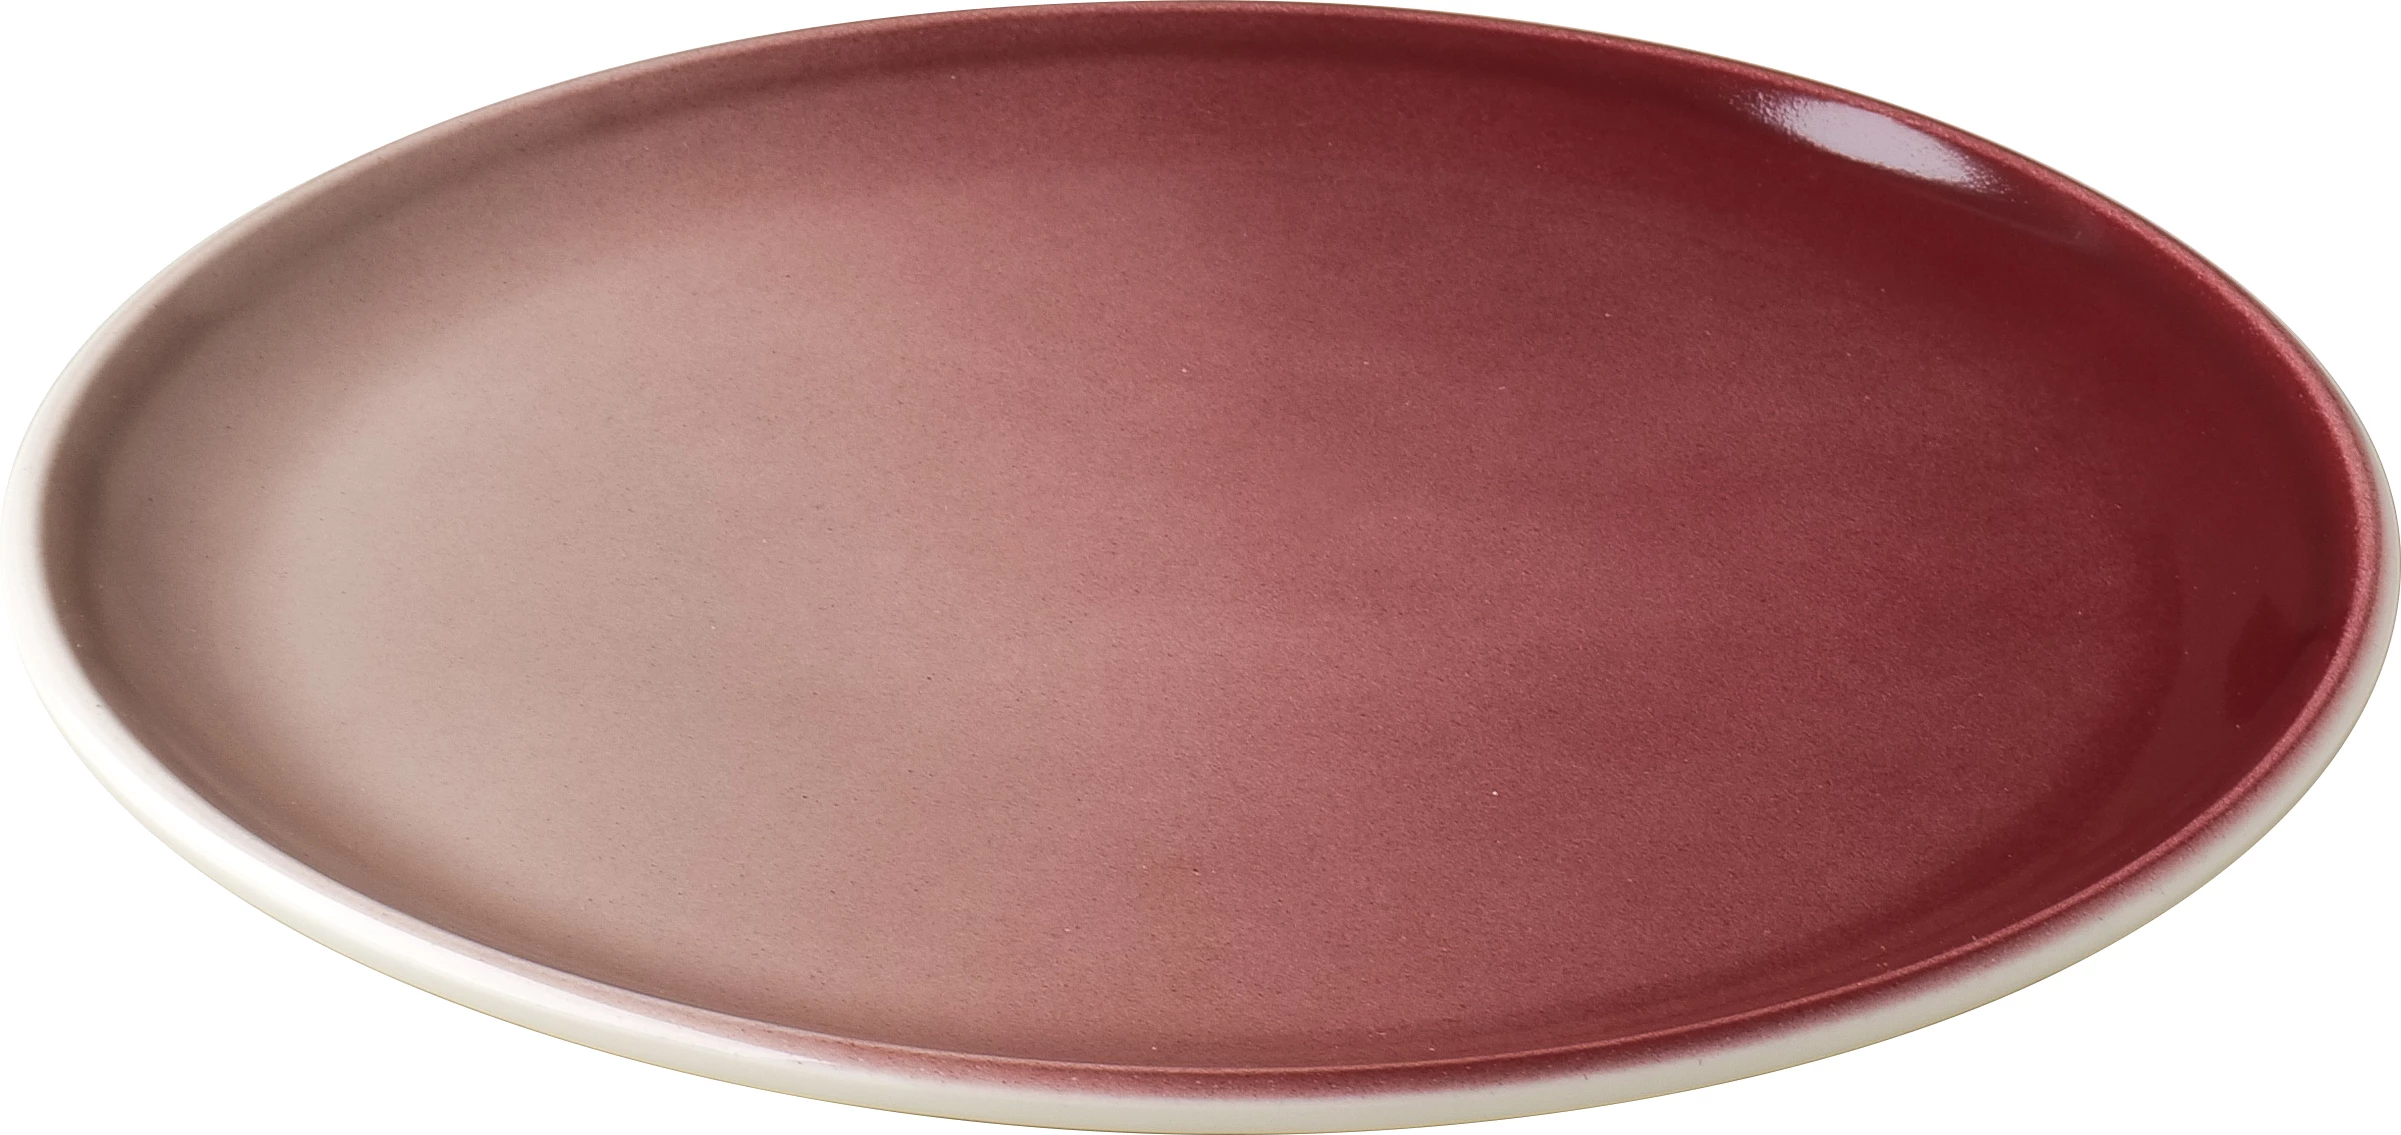 Figgjo Pax flad tallerken, rød, ø24 cm